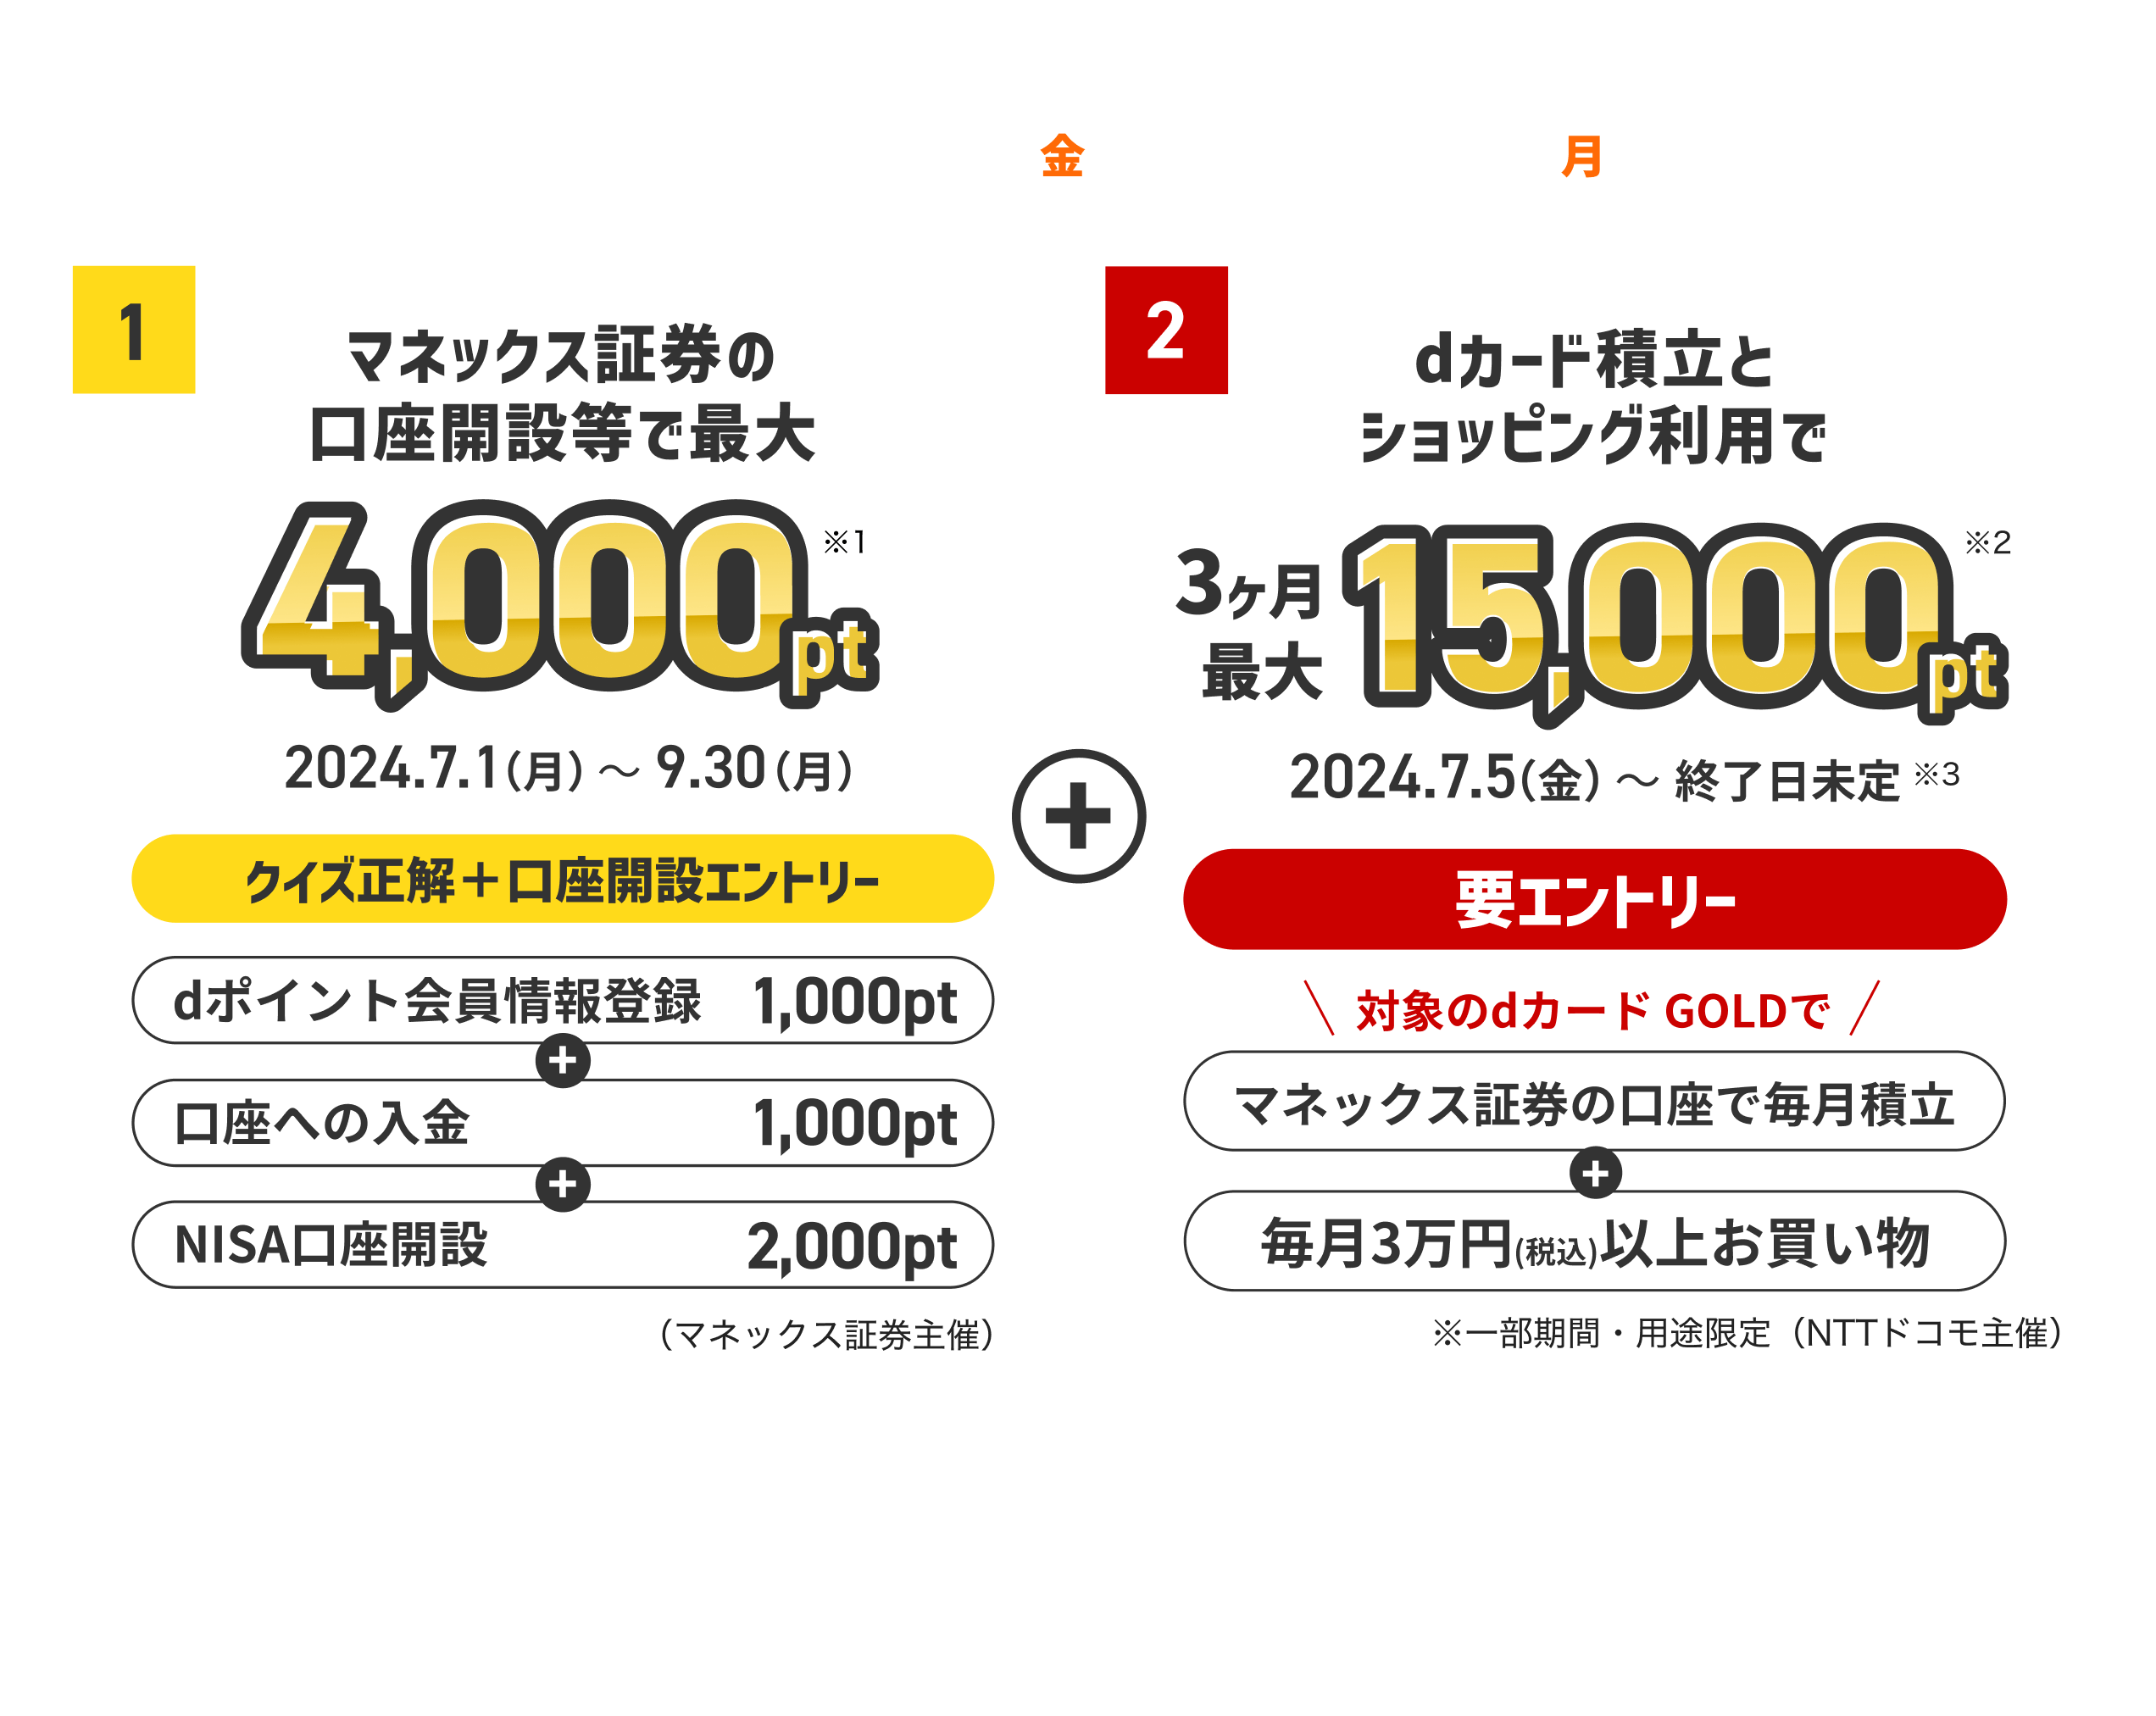 期間2024.7.5(金)-2024.9.30(月) キャンペーン1とキャンペーン2の概要